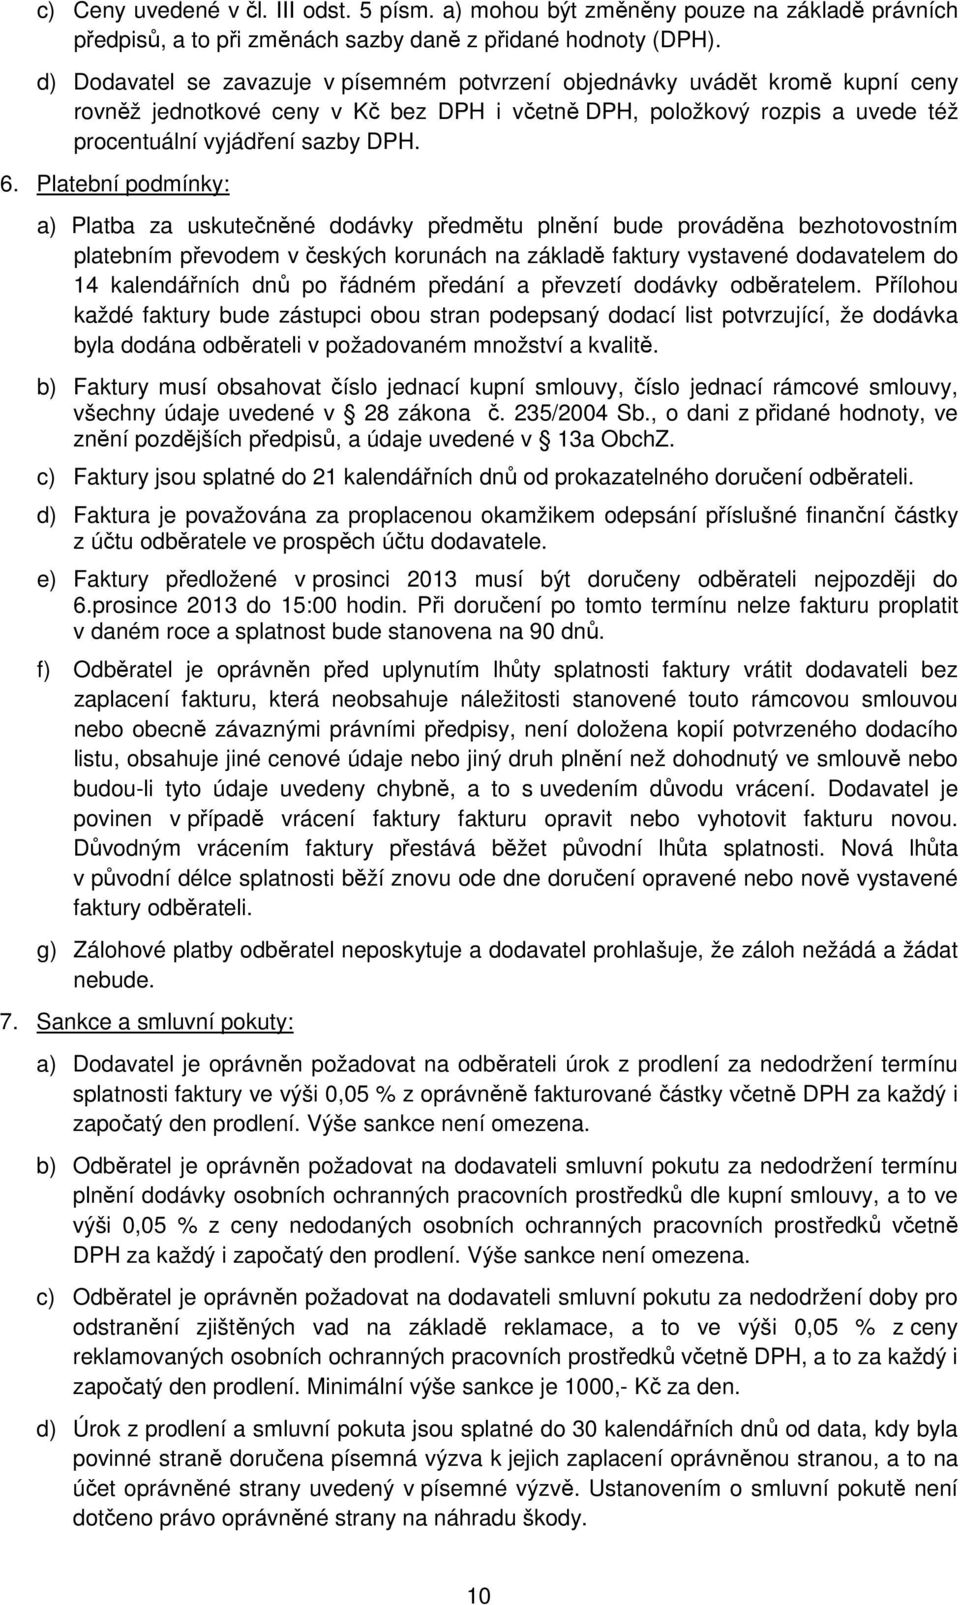 Platební podmínky: a) Platba za uskutečněné dodávky předmětu plnění bude prováděna bezhotovostním platebním převodem v českých korunách na základě faktury vystavené dodavatelem do 14 kalendářních dnů